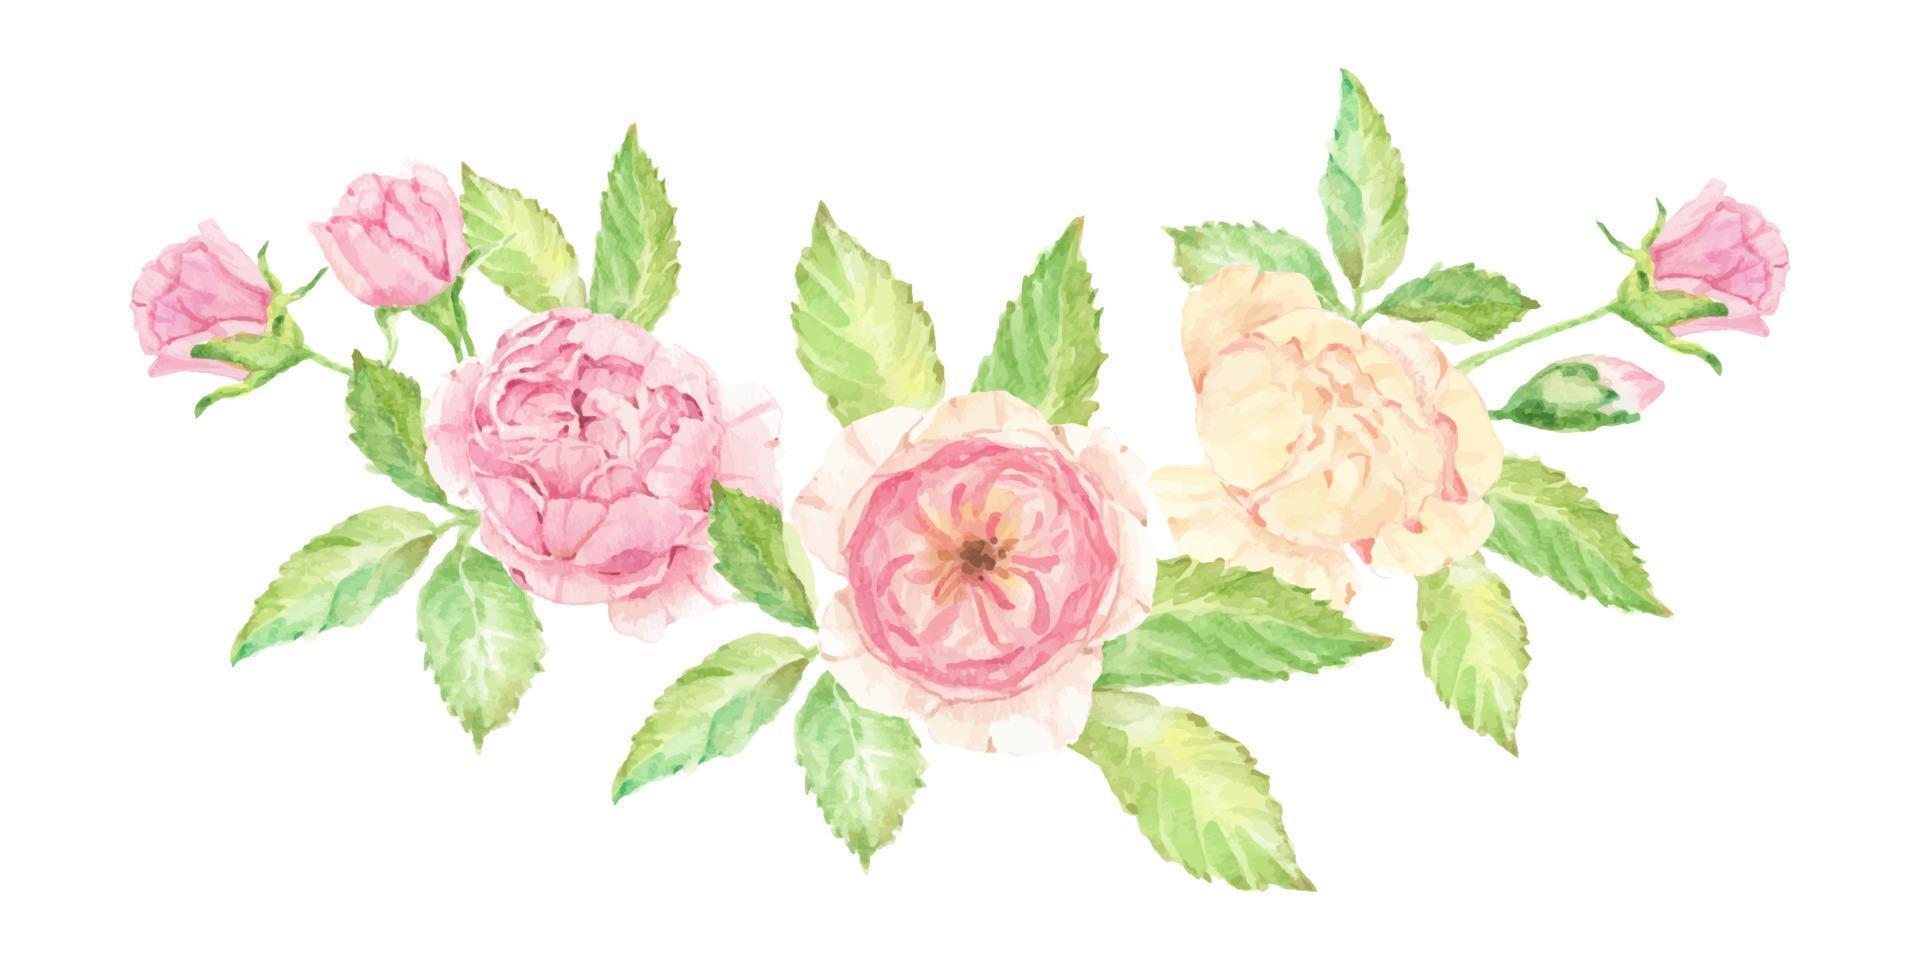 aquarela lindo buquê de flores rosas inglesas isolado no fundo branco vetor